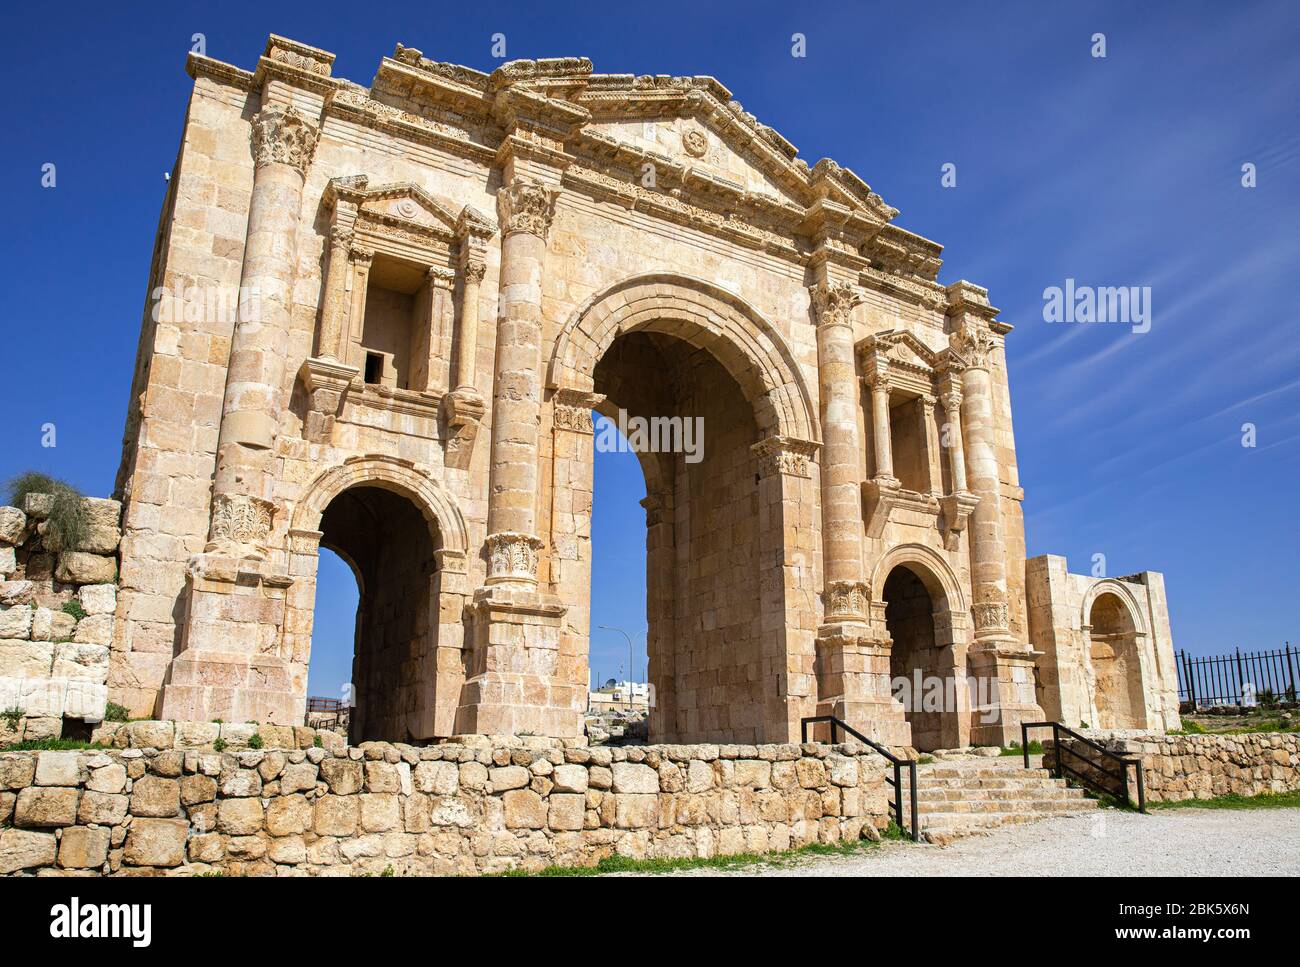 Arco de Adriano en Jerash Sitio Arqueológico de las antiguas Ruinas romanas, Jordania Foto de stock